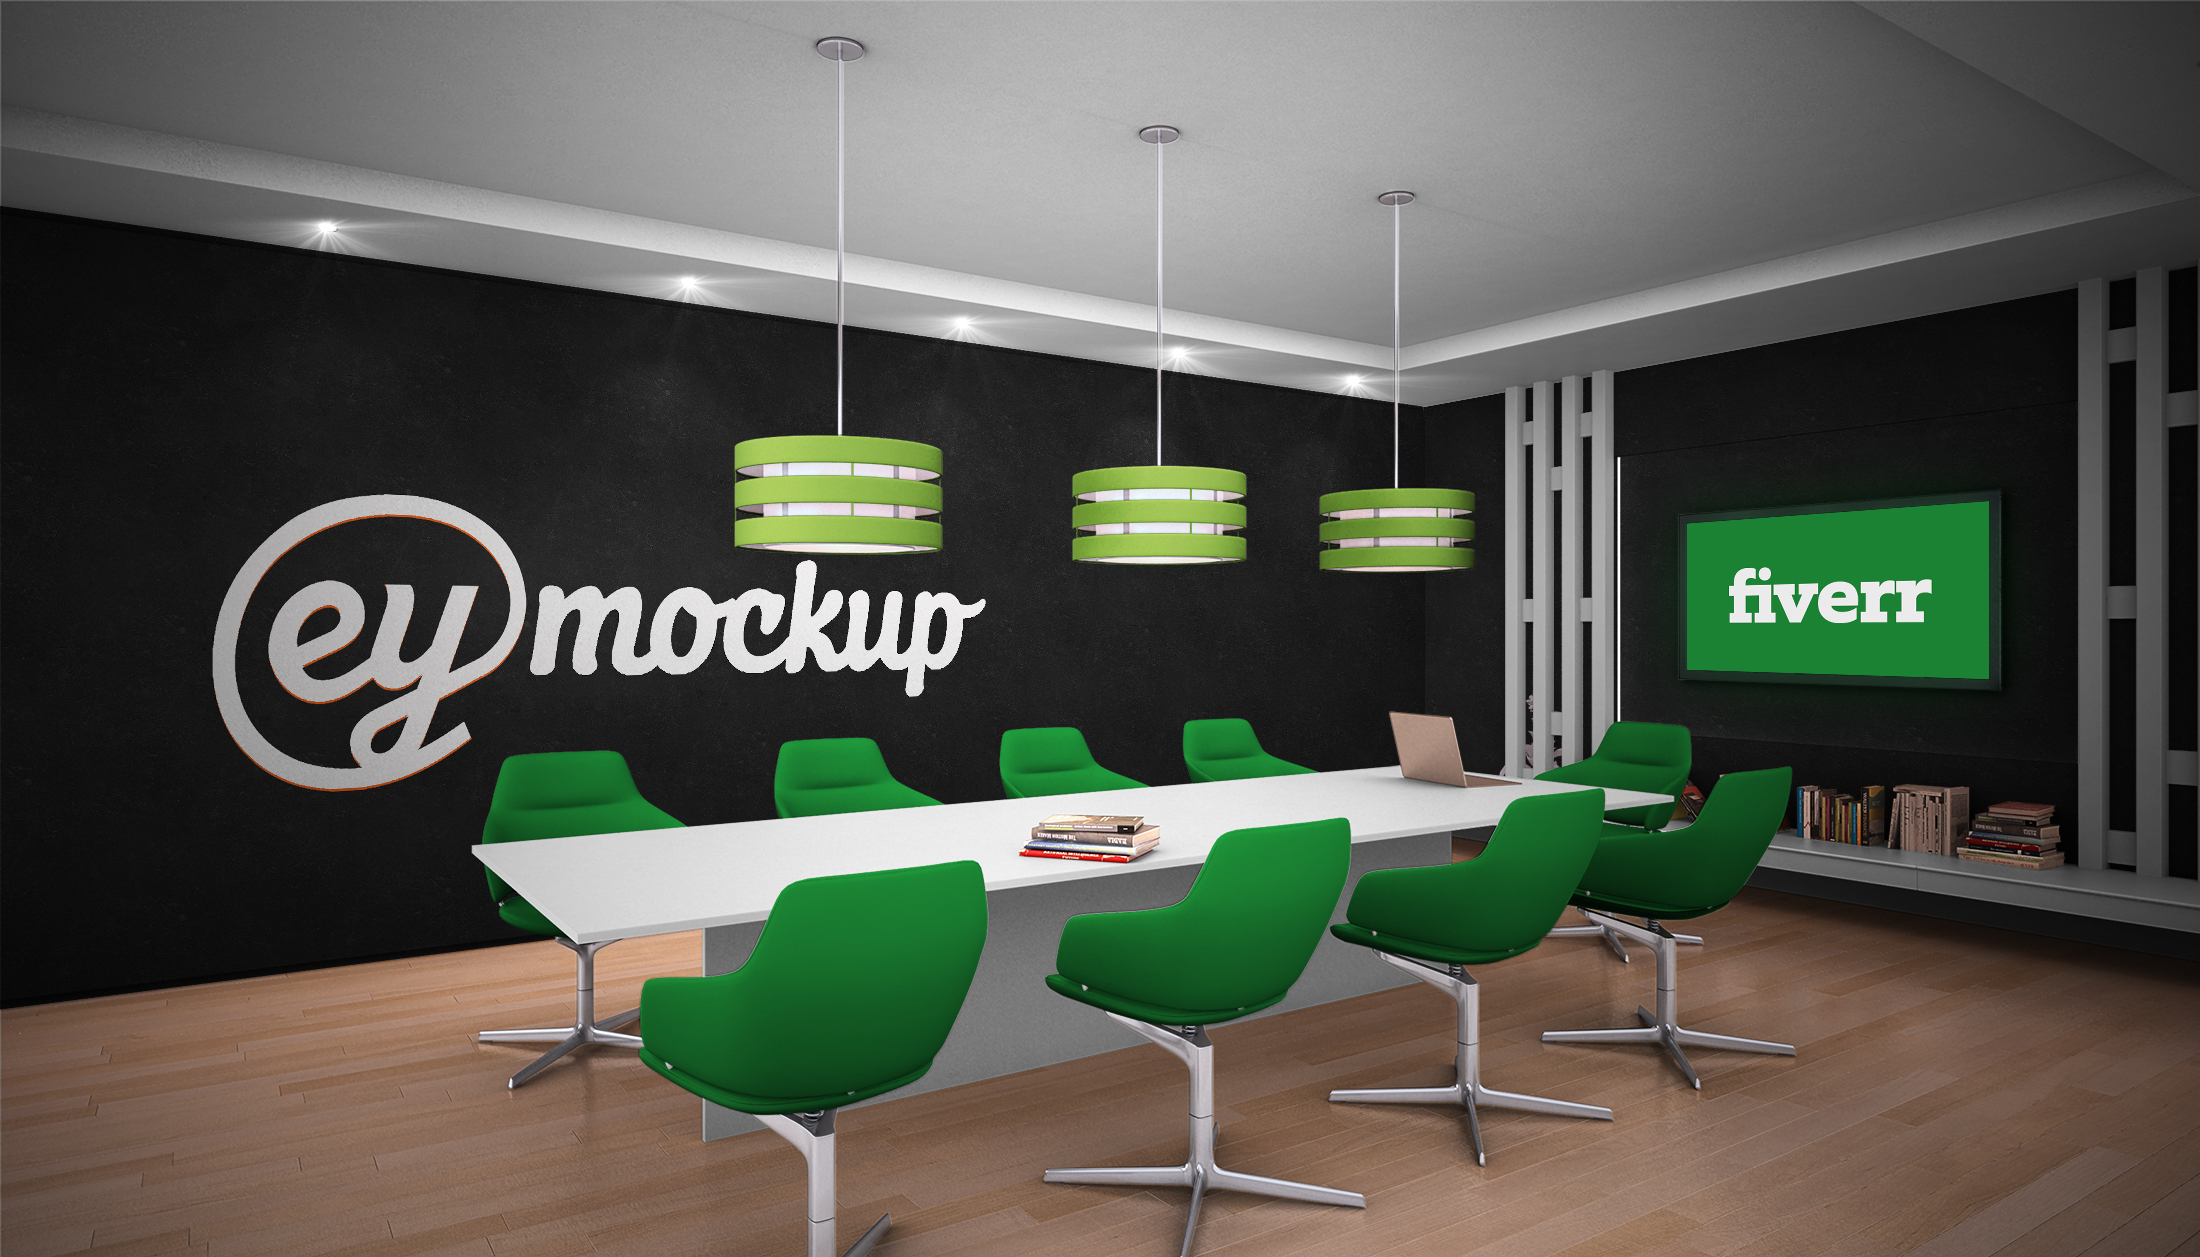 Board Meeting Room Wall Logo Mockup